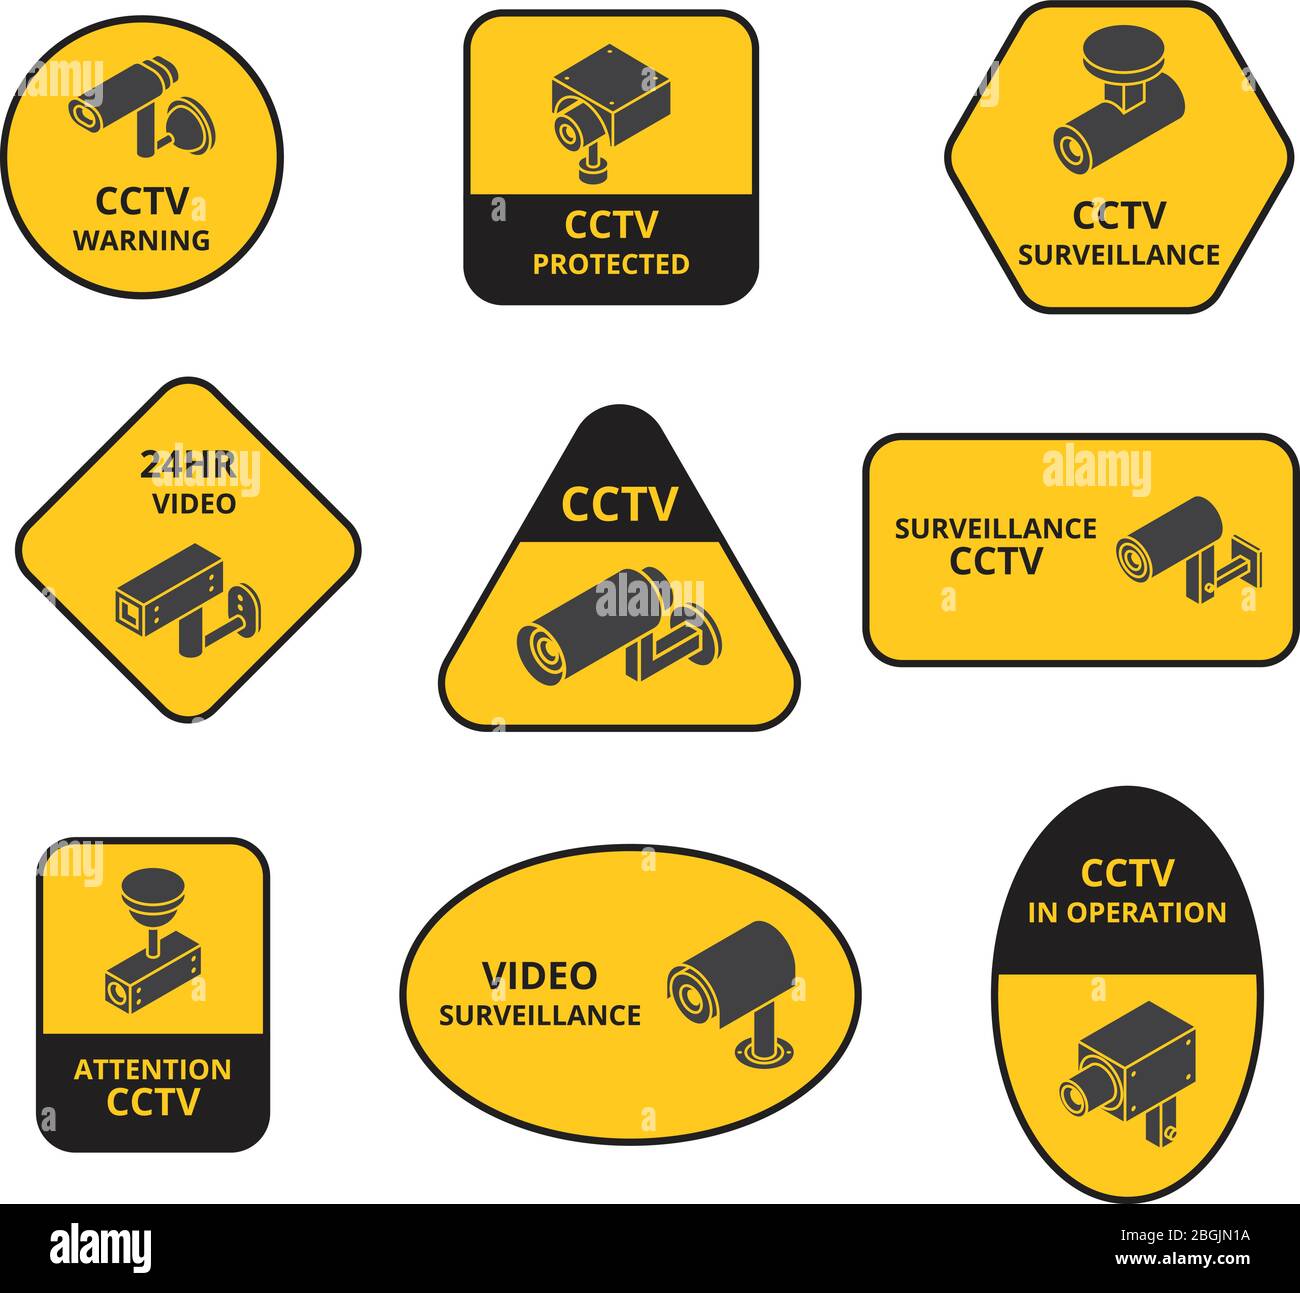 Telecamera di sicurezza cctv, sorveglianza telecamere per esterni adesivi di allarme vettoriale. Sicurezza video, controllo di visione cctv, sorveglianza e illustrazione della sicurezza Illustrazione Vettoriale